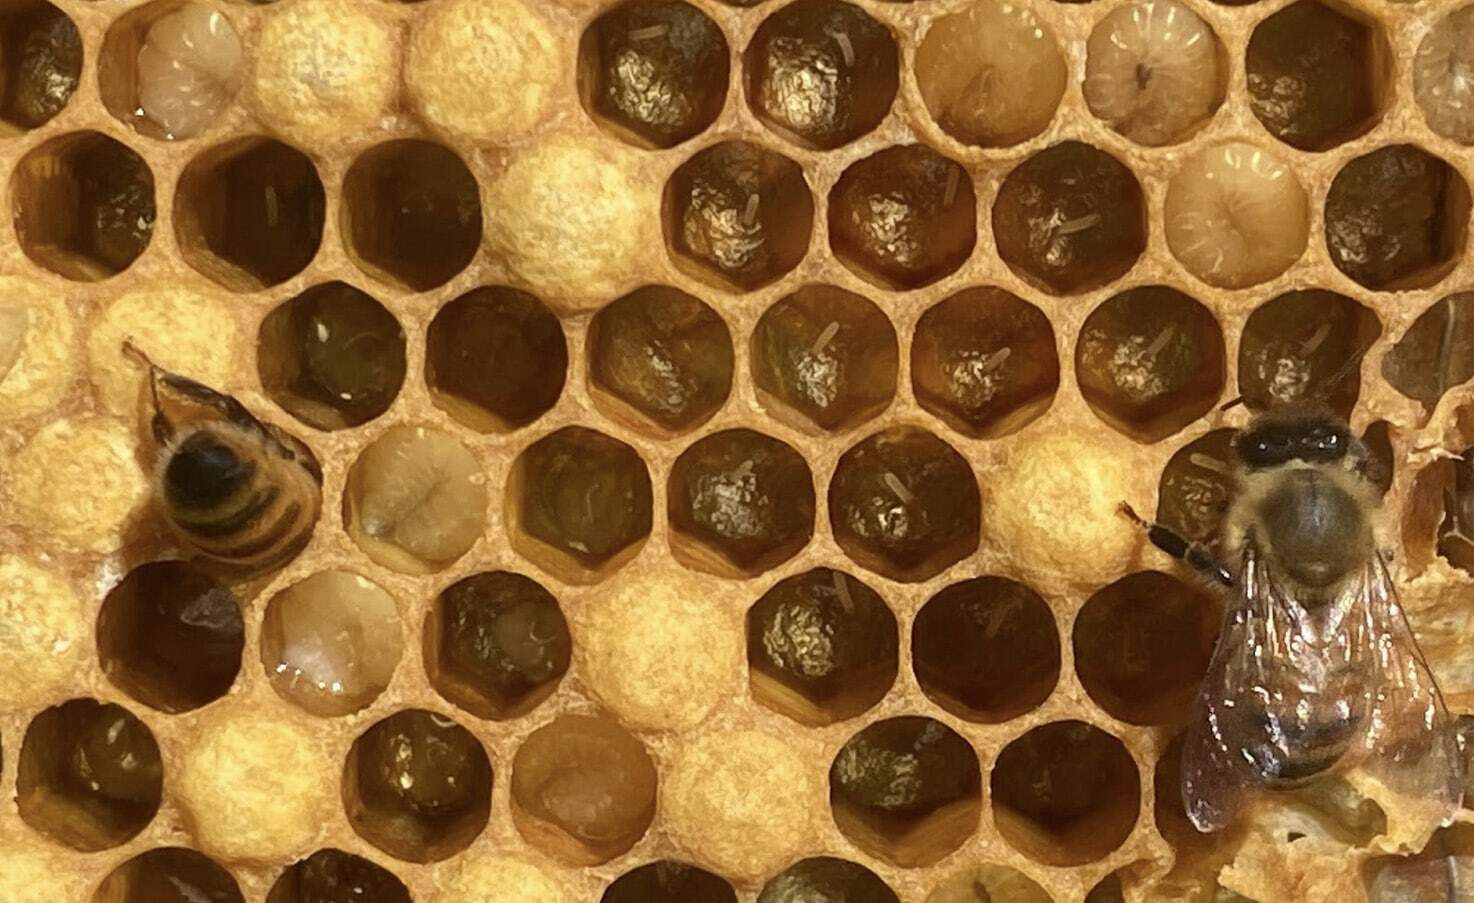 Bees up-close